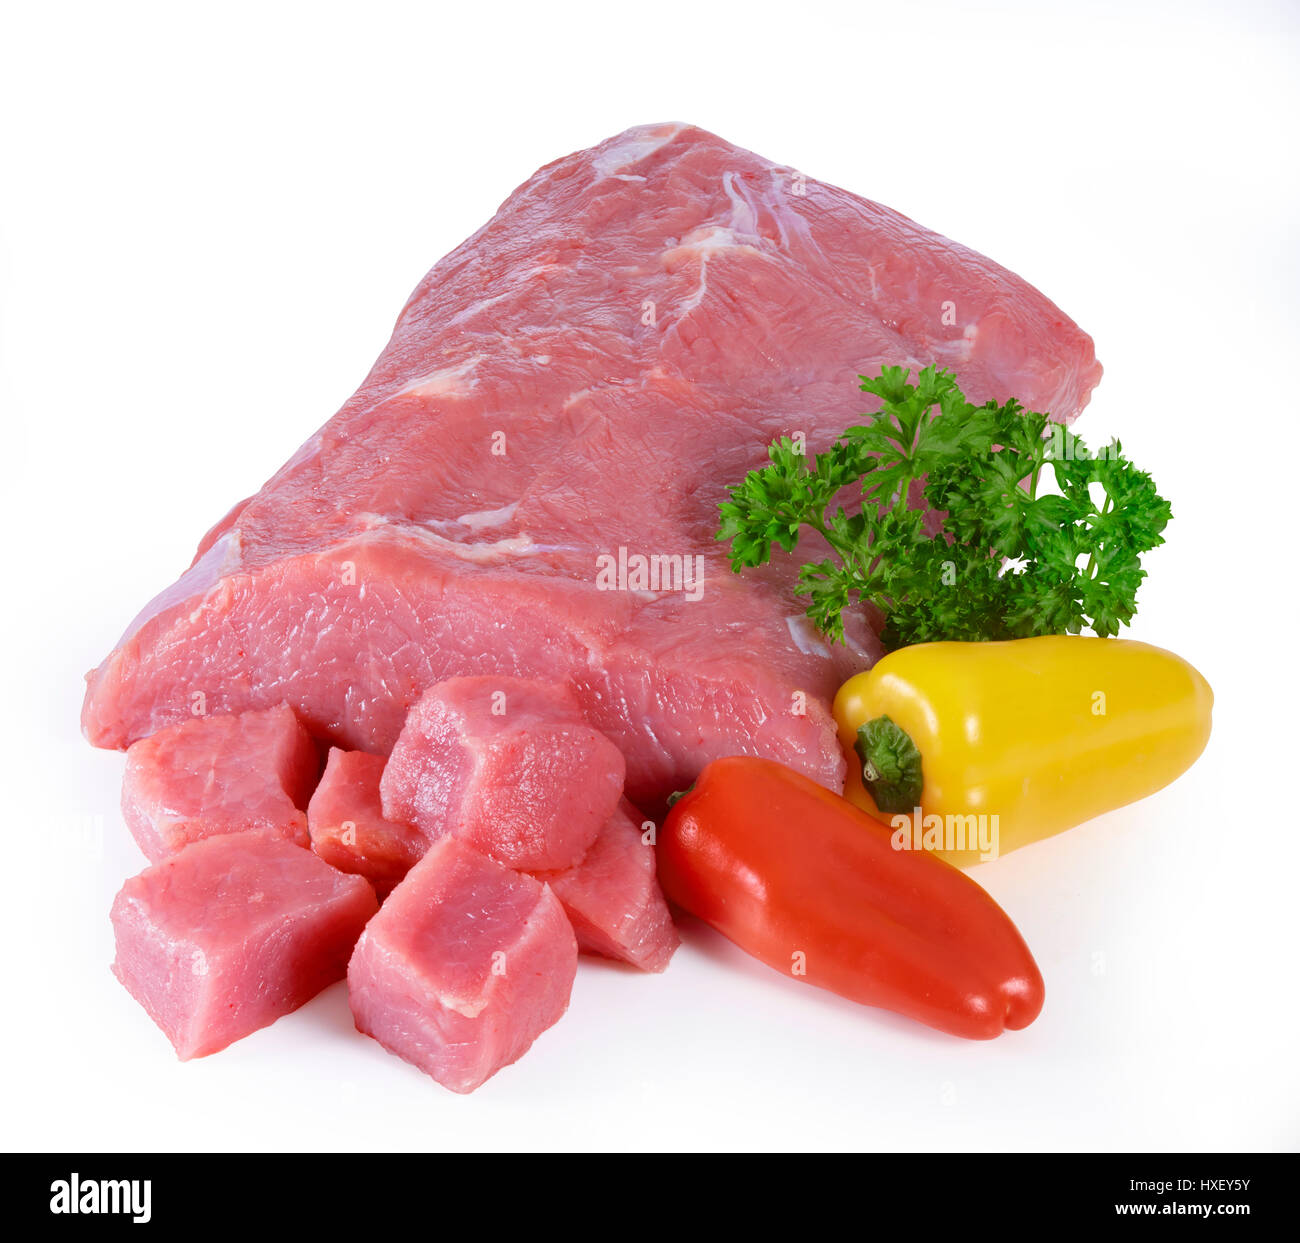 La leche cruda, carne de ternera, pimientos (Capsicum) y perejil (Petroselinum crispum) como decoración Foto de stock